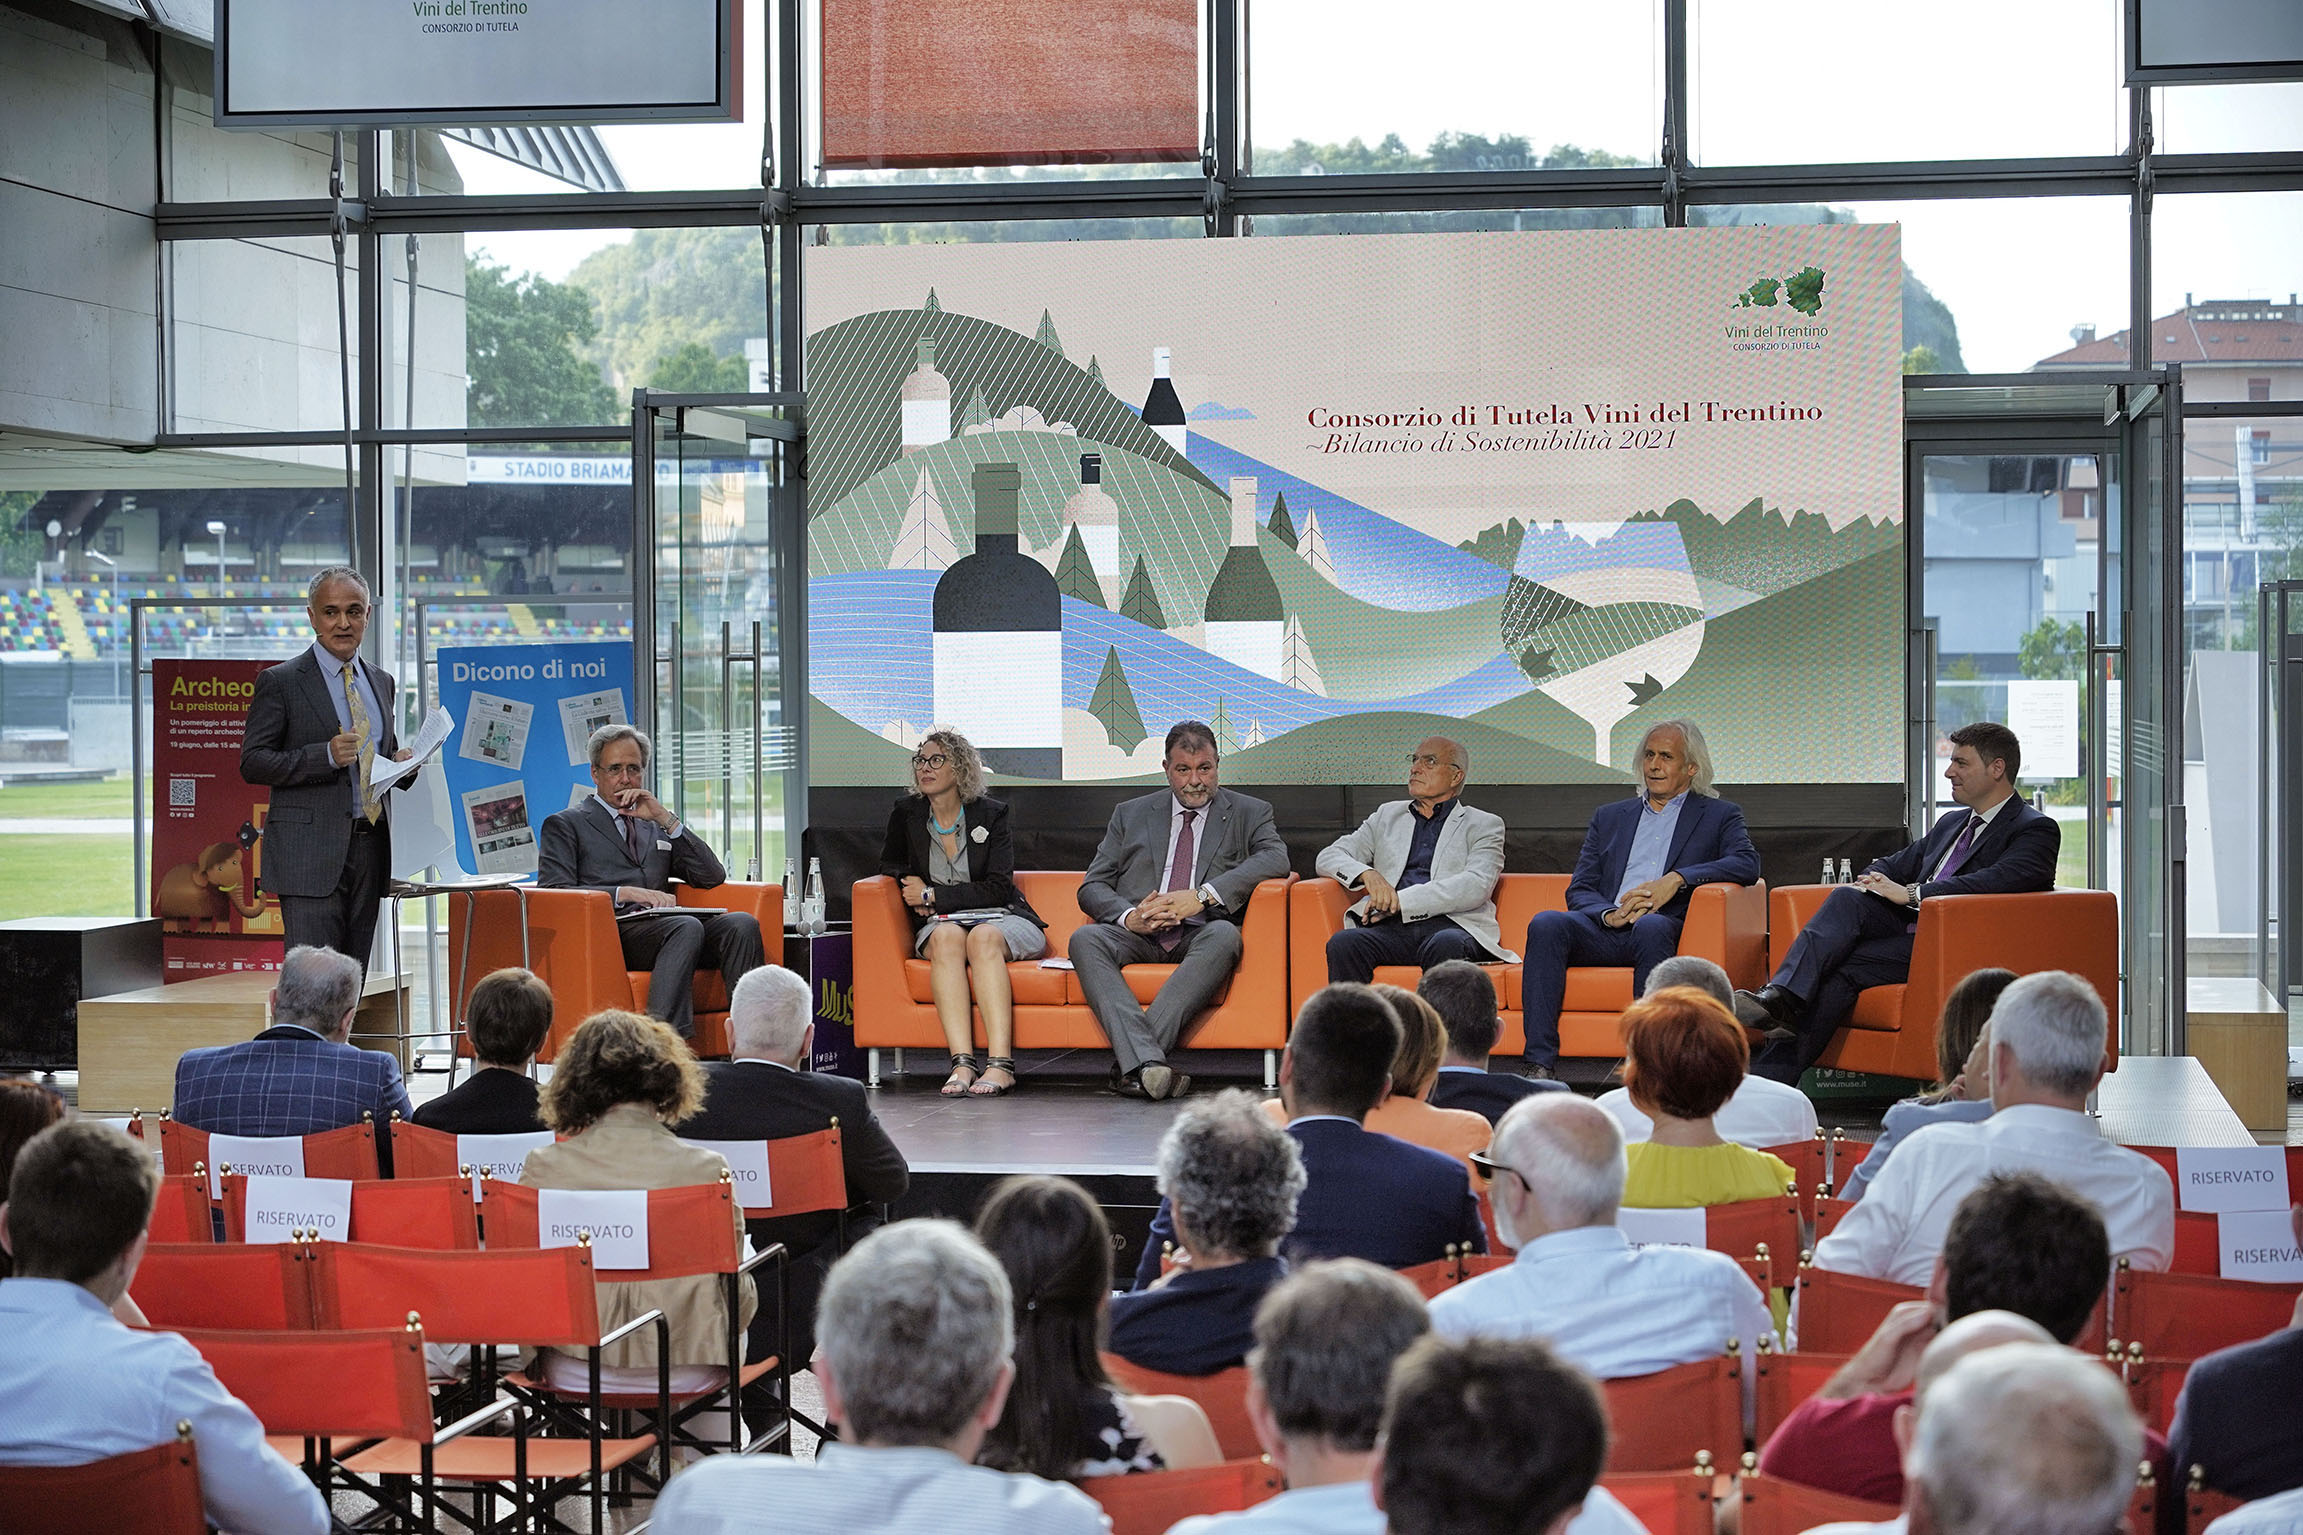 Un primato frutto di unità e sinergia: il Consorzio Vini del Trentino presenta il Bilancio di Sostenibilità